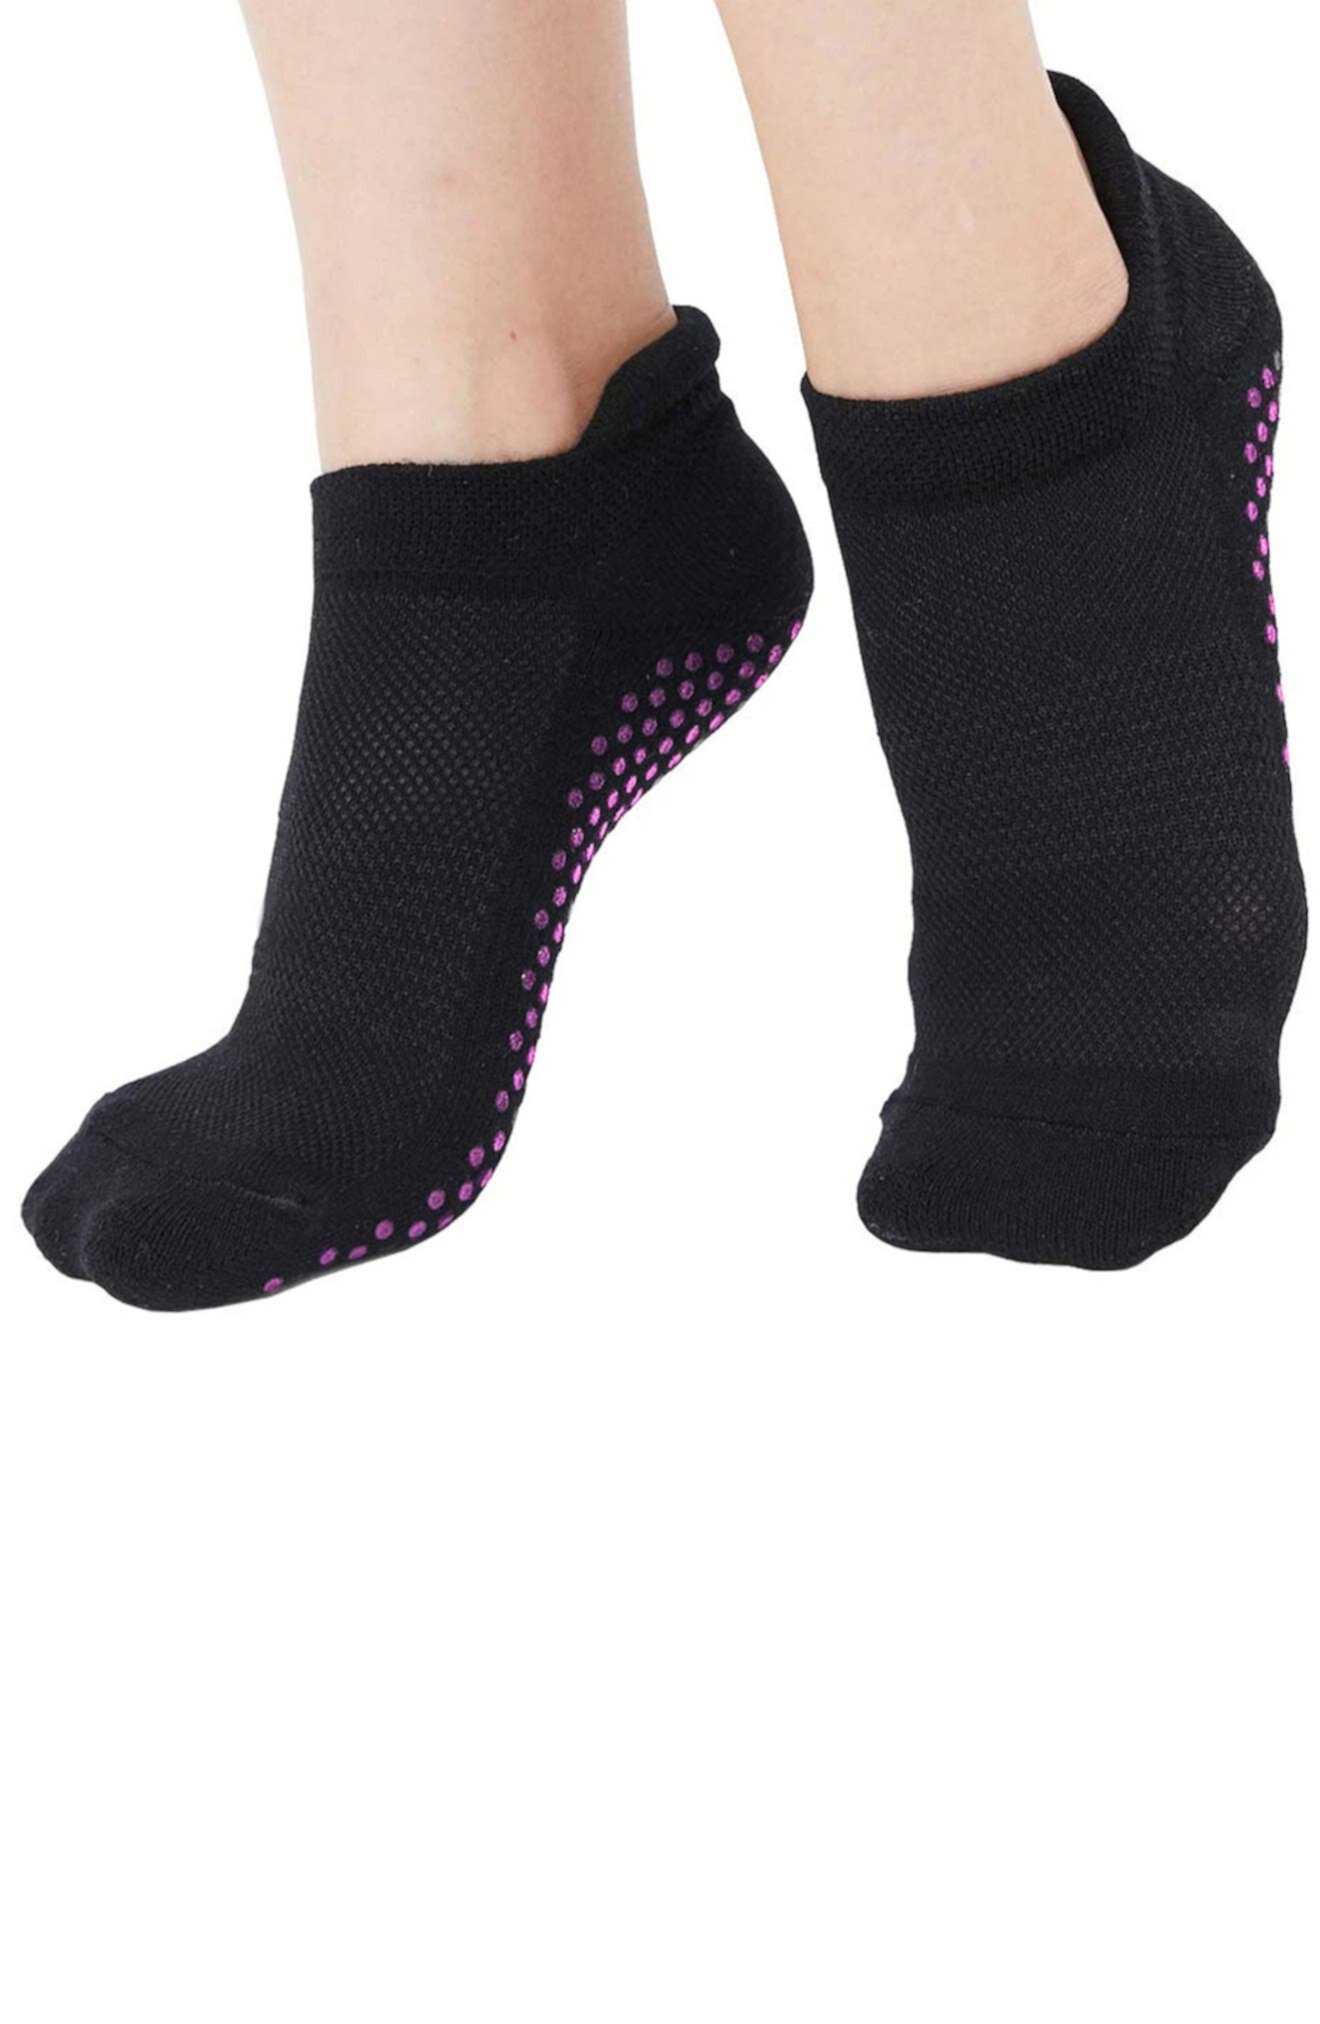 Нескользящие носки для тренировок - упаковка из 3 шт. Extreme Fit